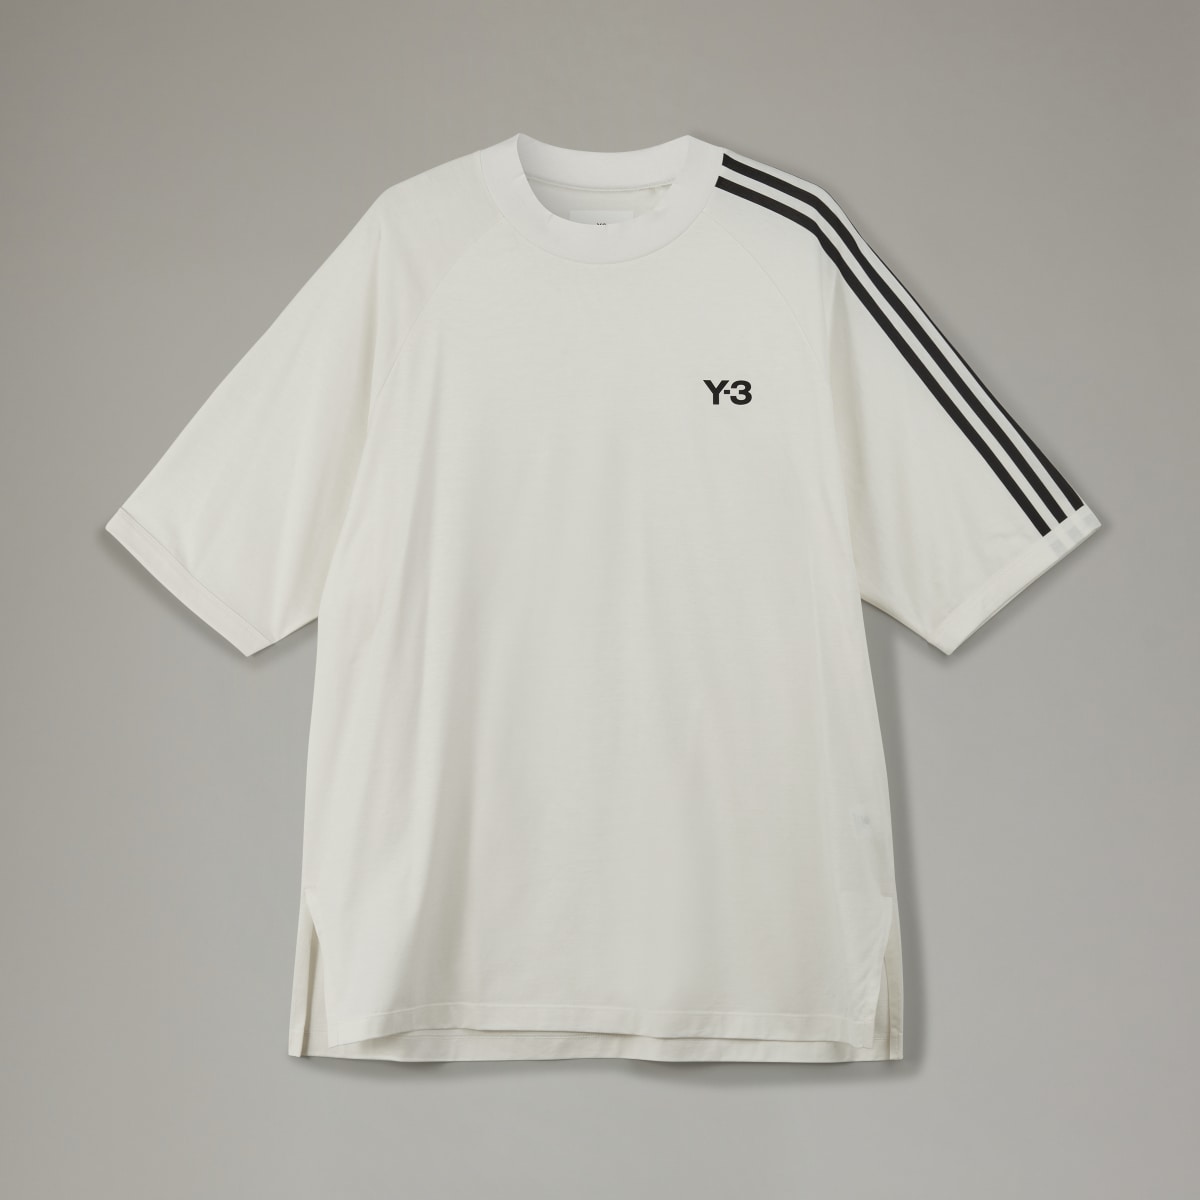 Adidas T-shirt 3-Stripes Y-3. 5